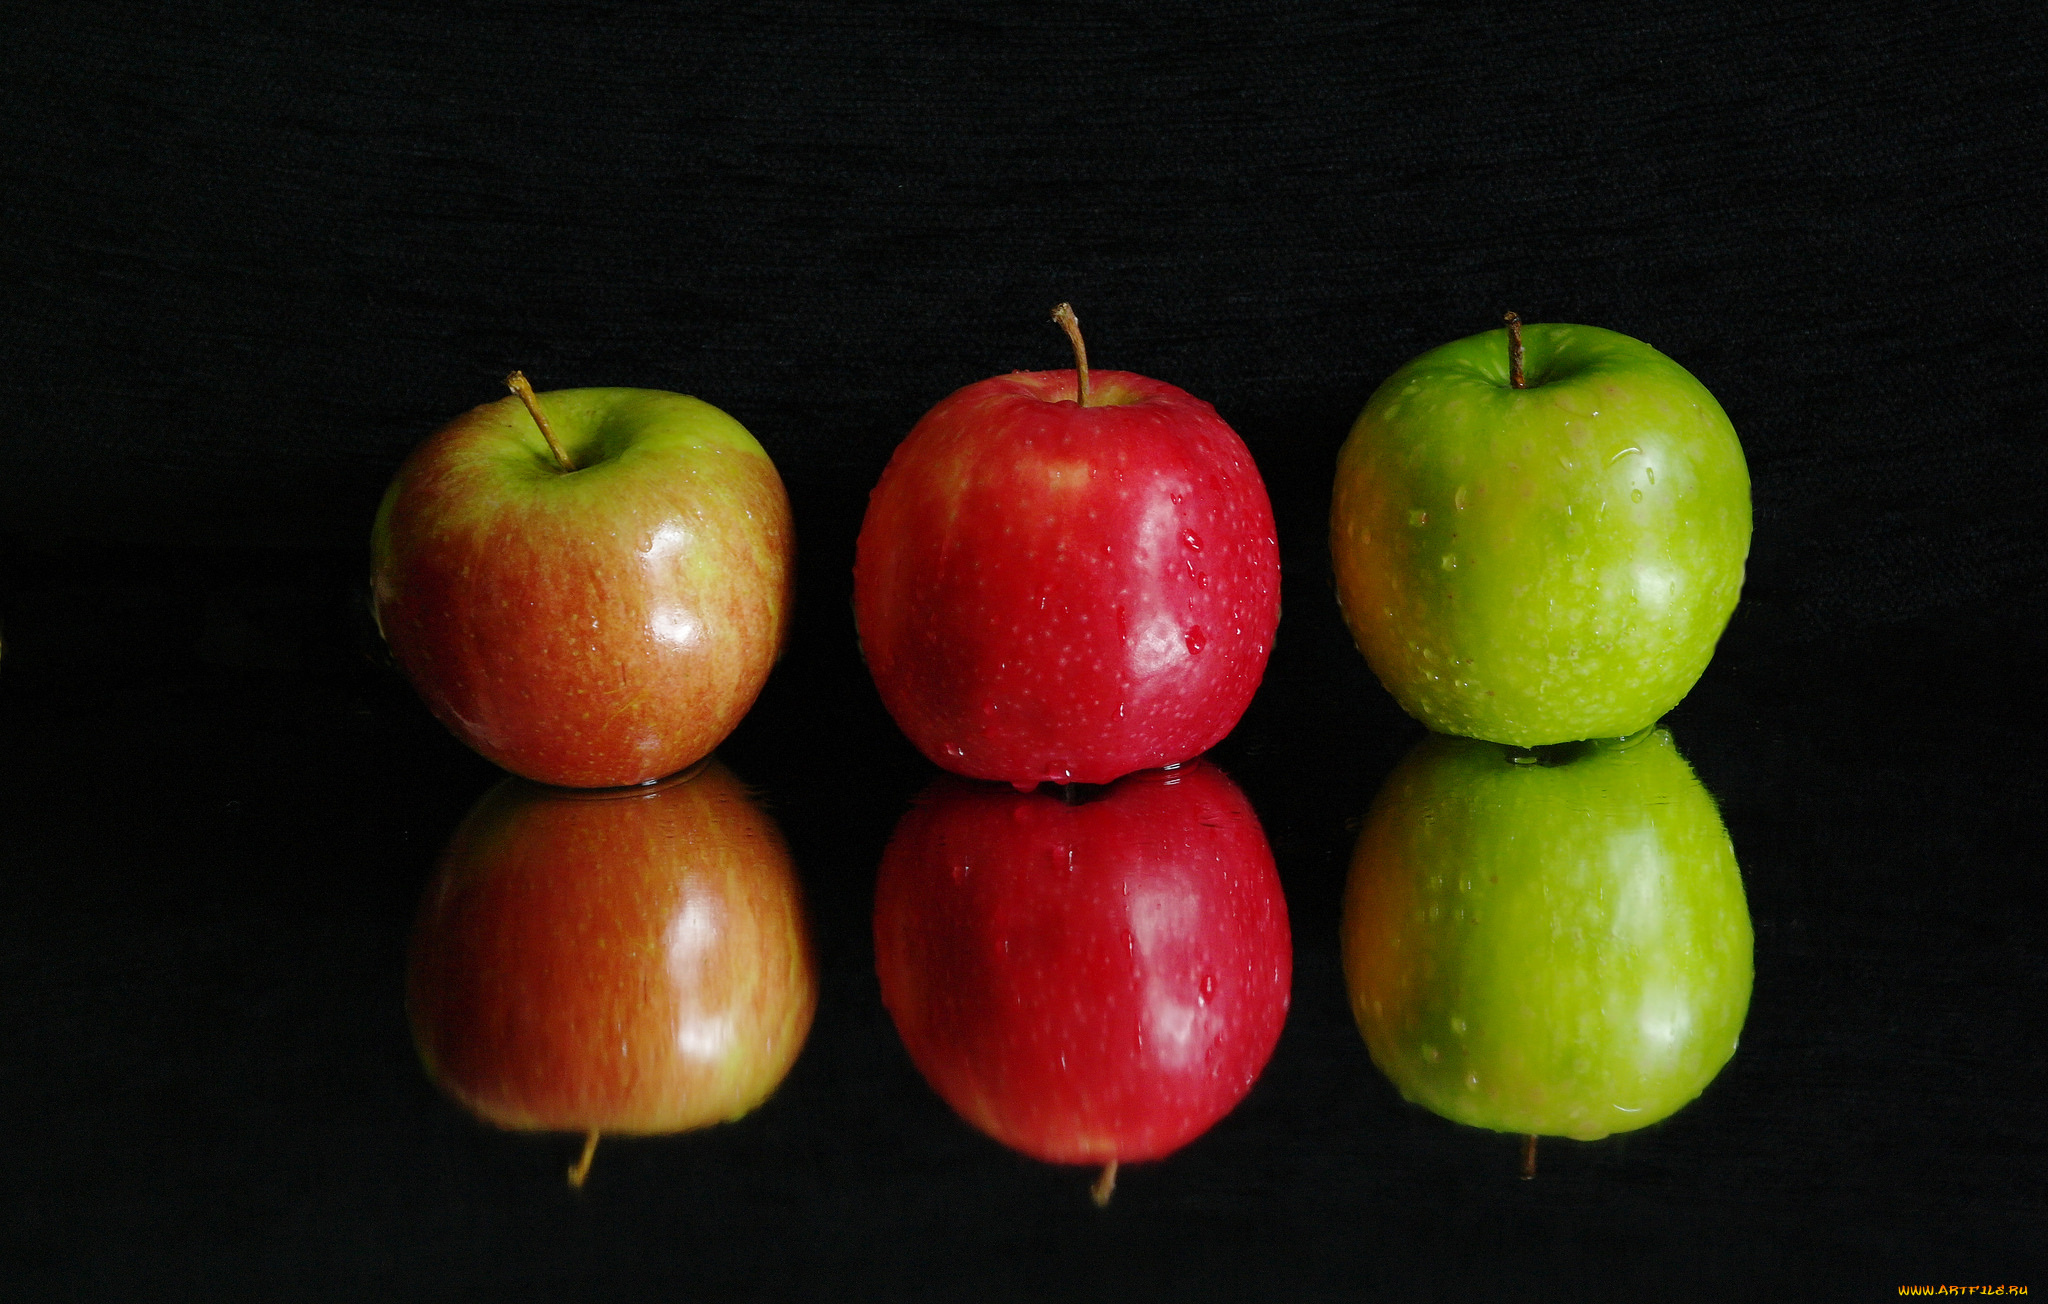 Включи 3 яблока. Три яблока. Цветные яблоки. Разные яблоки. Красное и зеленое яблоко.